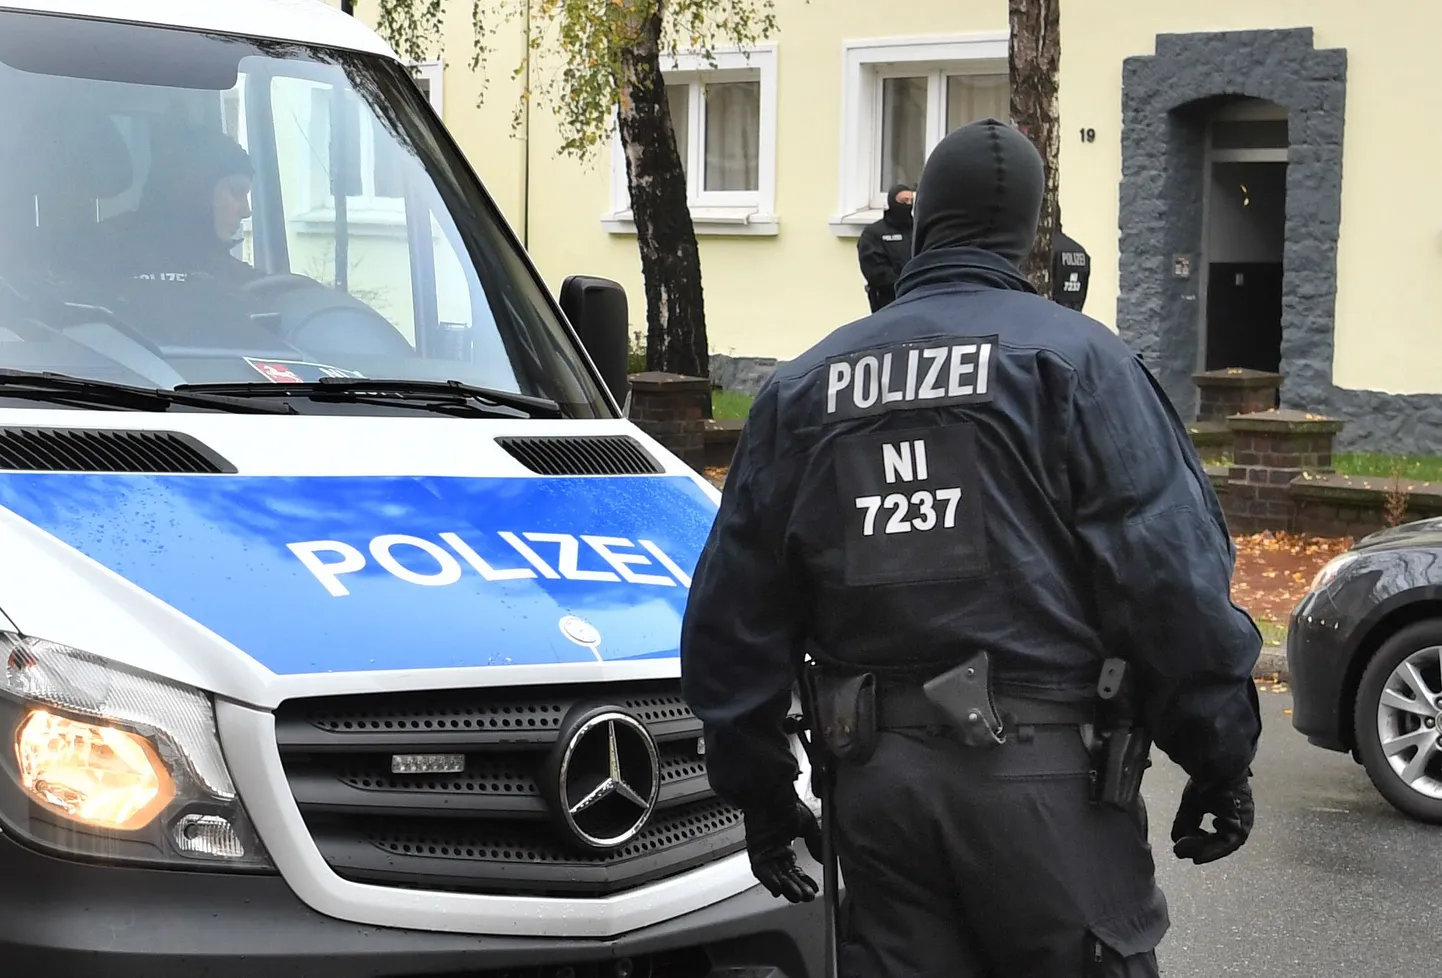 Задержание предполагаемых террористов в Германии.